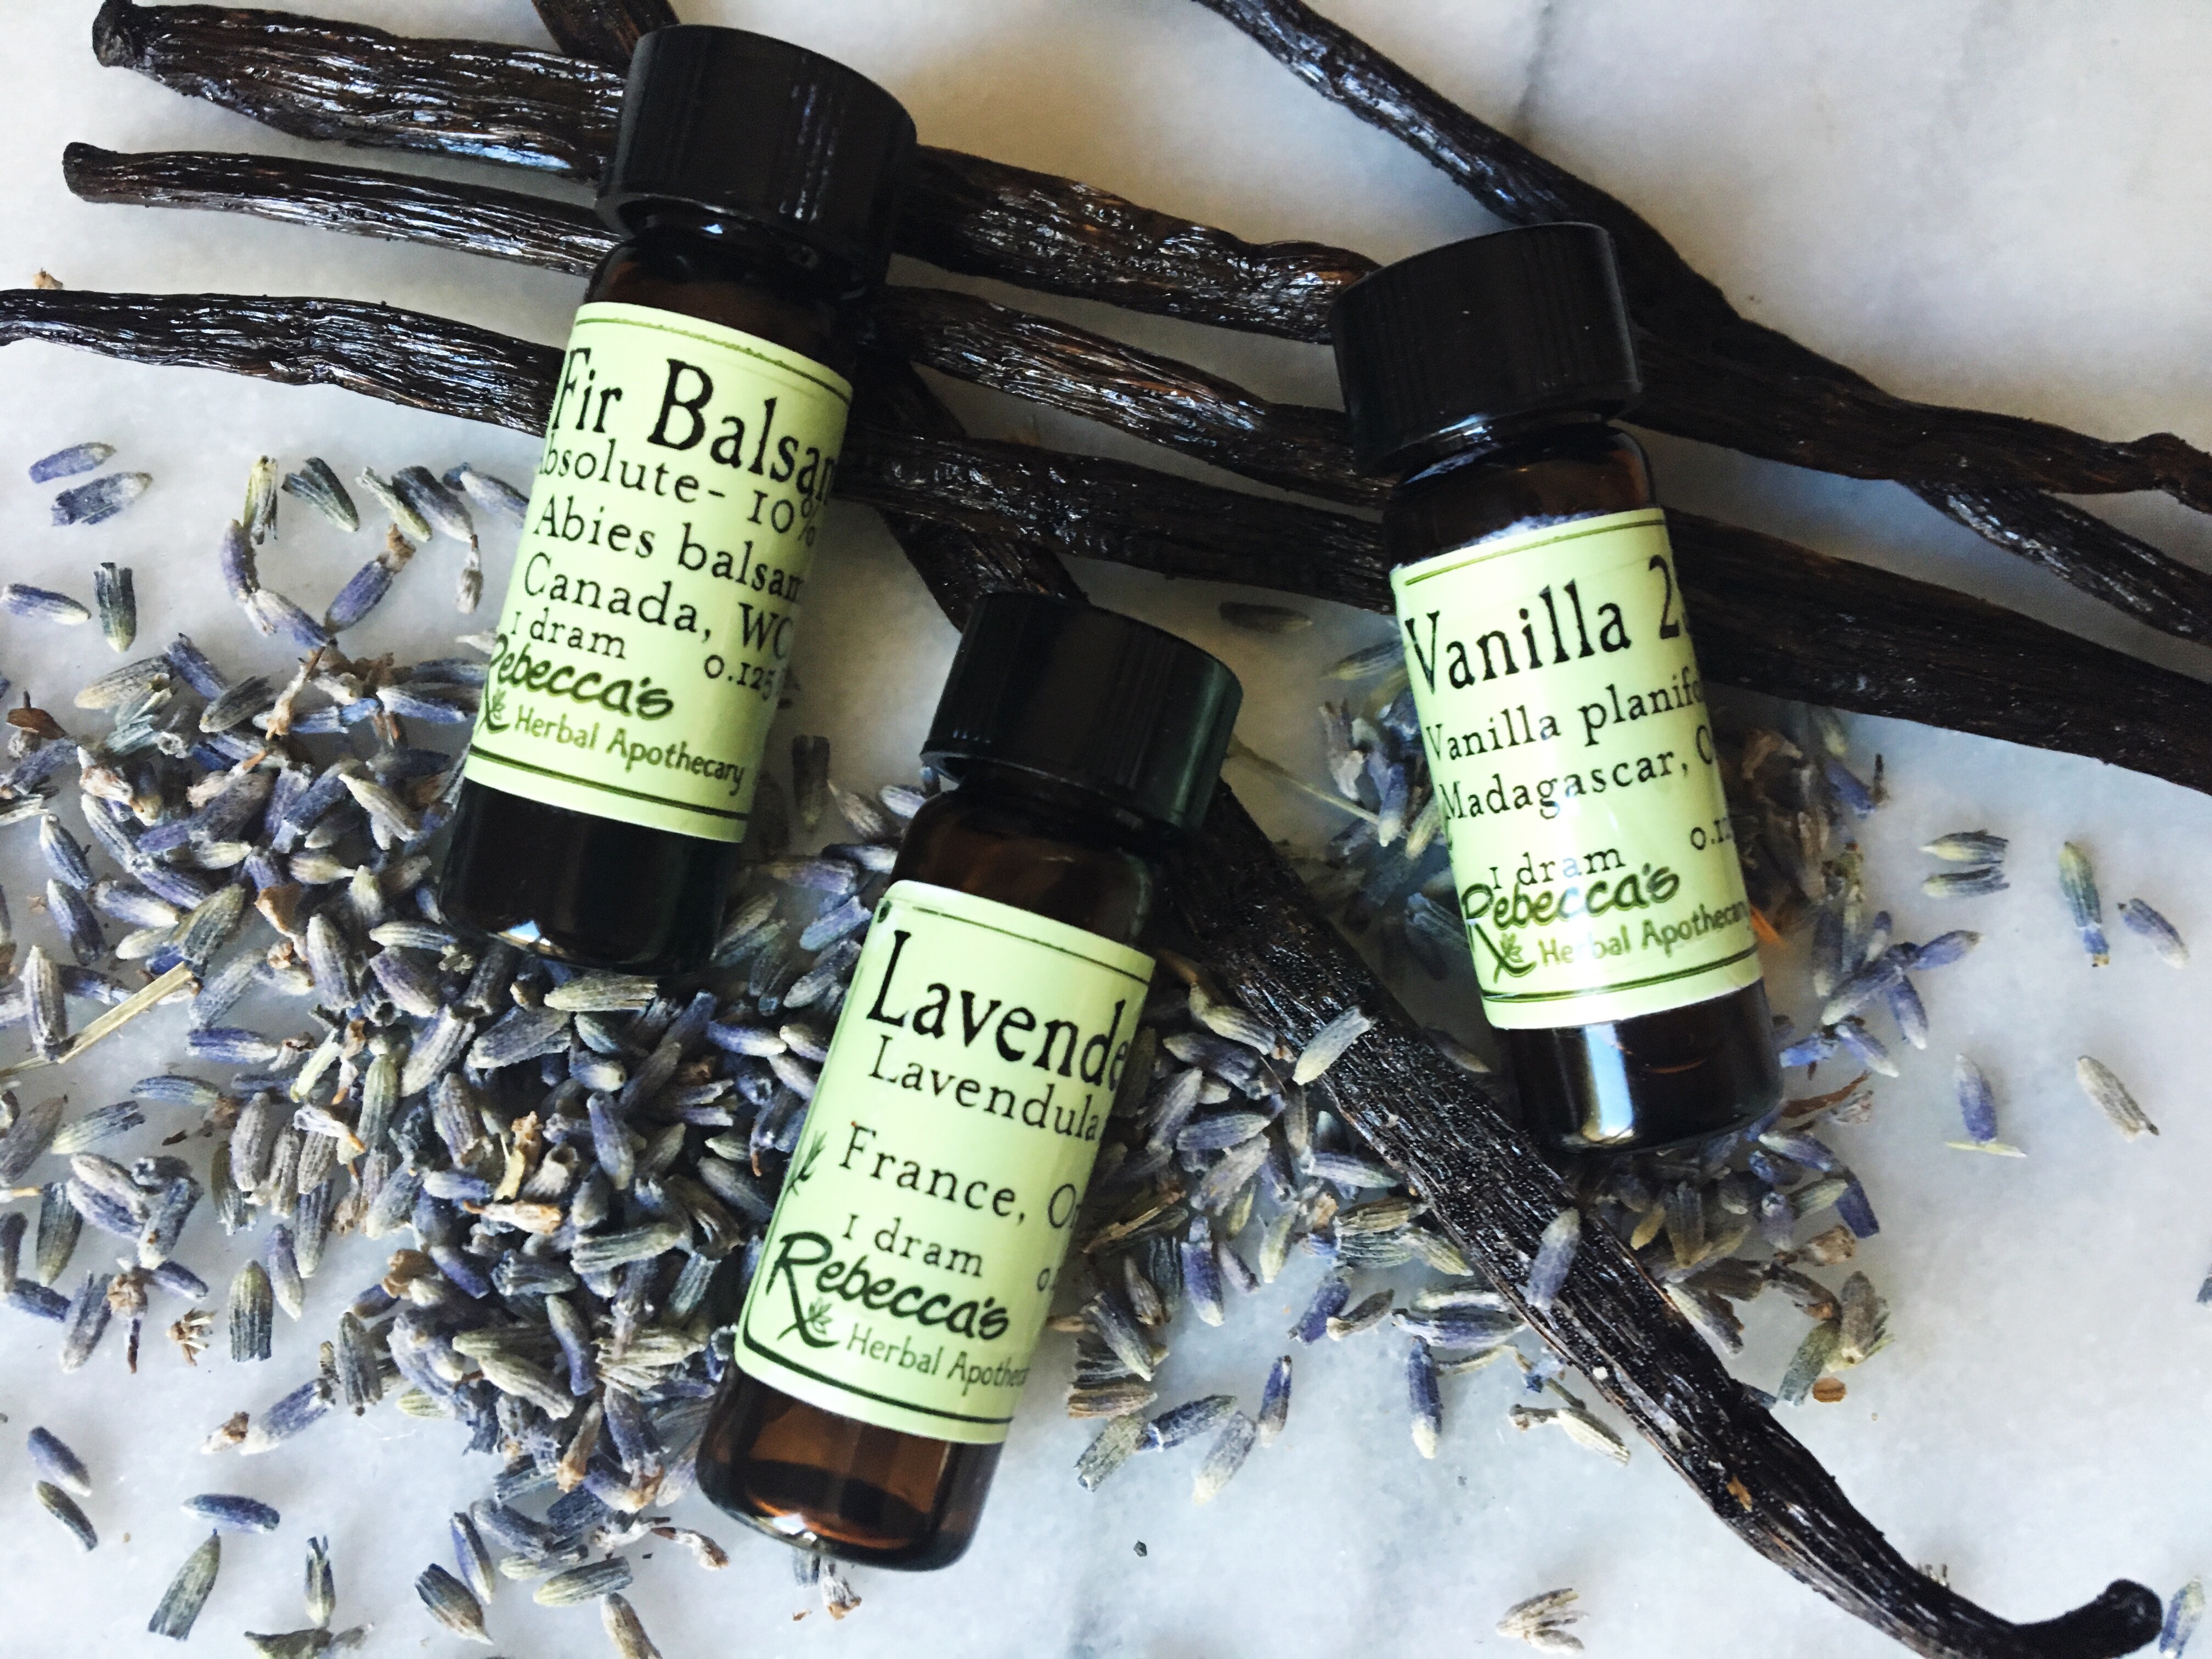 Vanilla Lavender Room Spray 